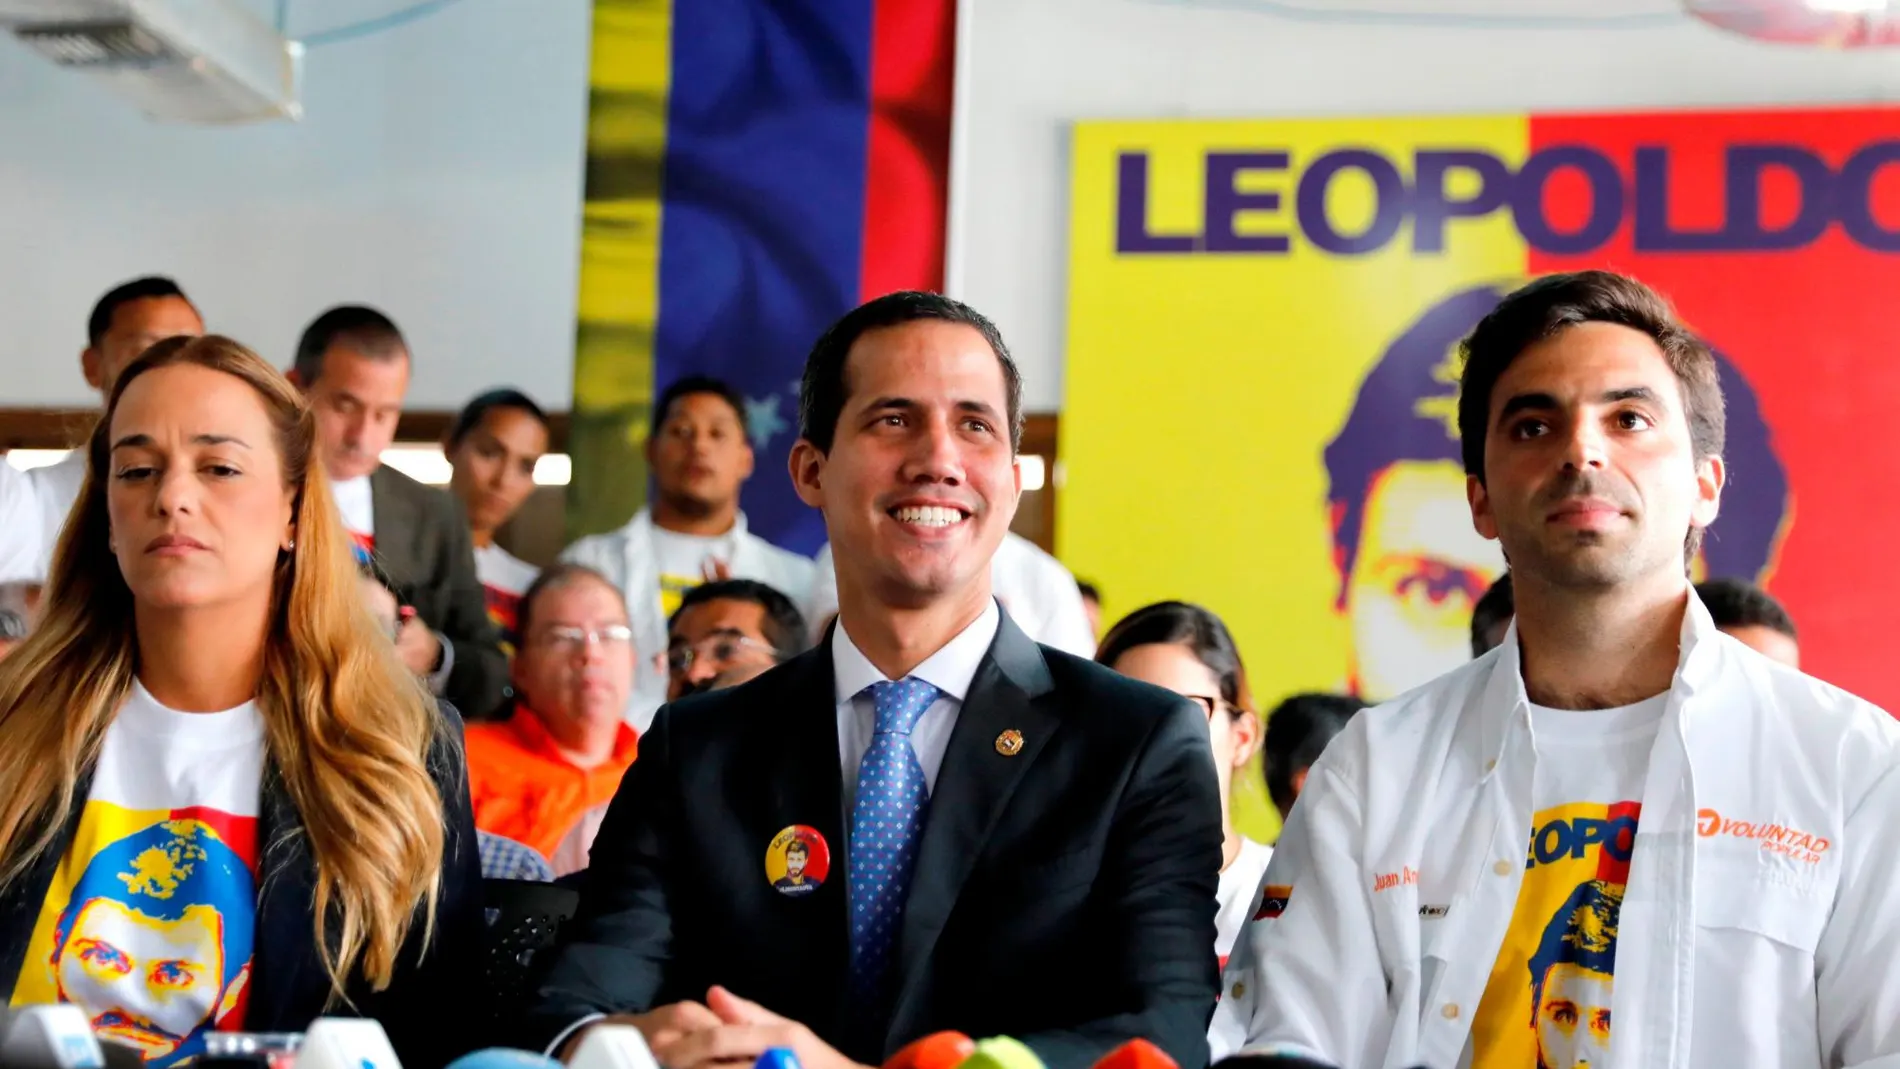 El jefe del Parlamento de Venezuela, Juan Guaidó, quien se proclamó presidente encargado de Venezuela, habla durante una rueda de prensa celebrada este lunes, día en que se cumplen 5 años del arresto de Leopoldo López / Foto: